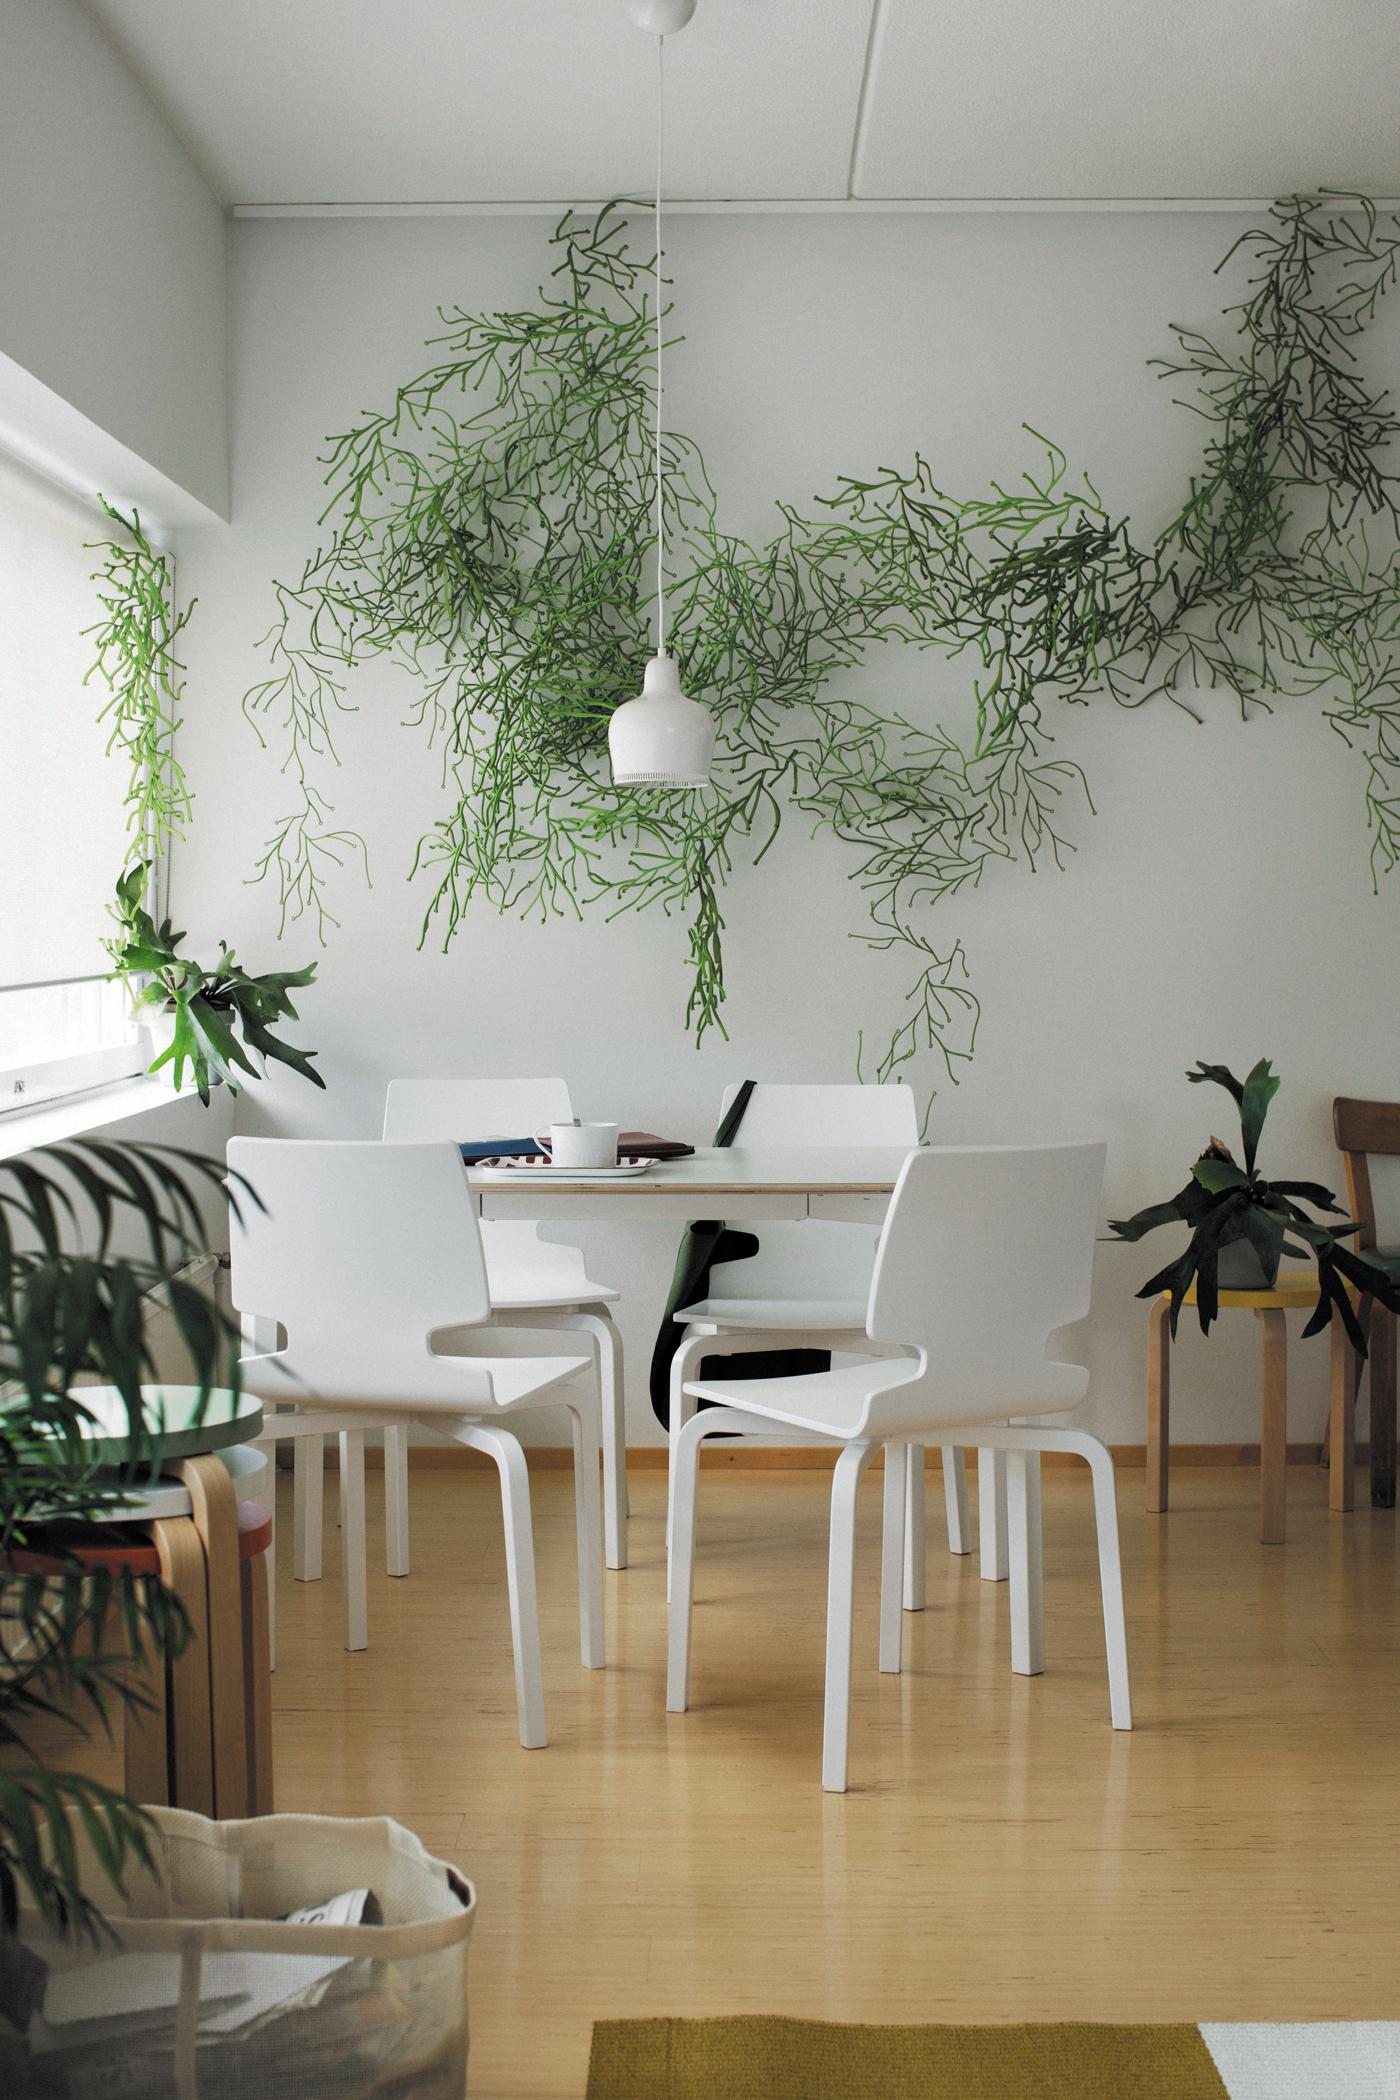 Pflanzen als Wanddeko #hocker #wohnzimmer #esstisch #wandgestaltung #holzhocker #wanddeko #pflanzendeko ©Artek